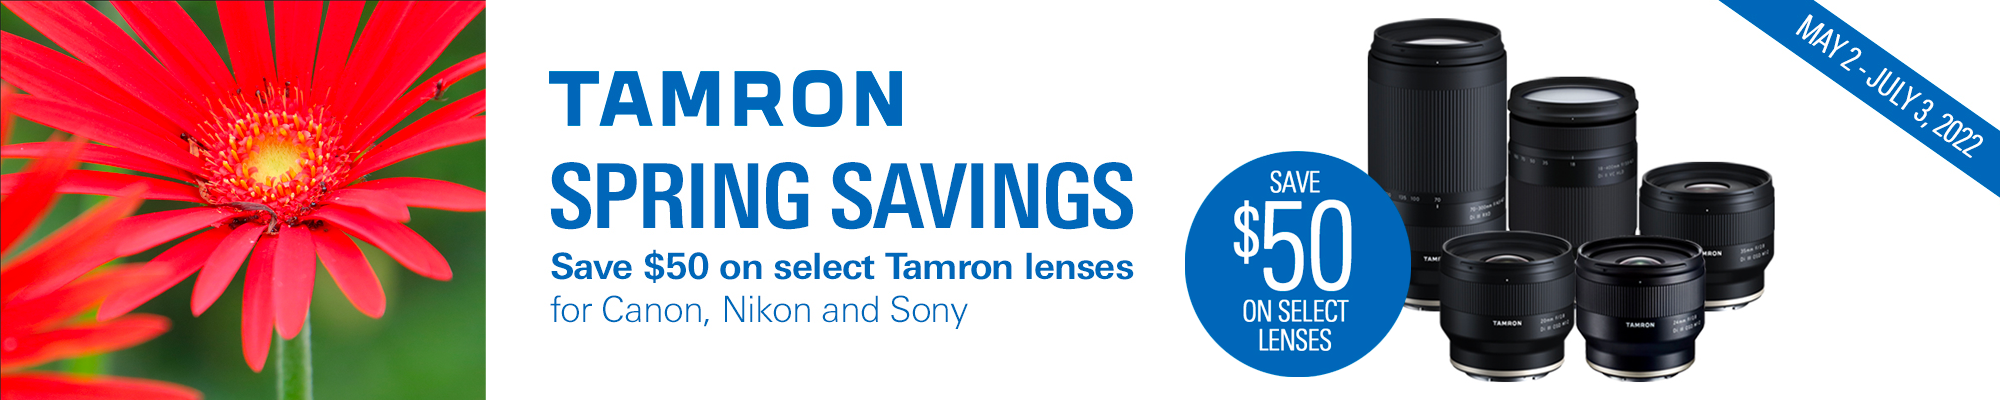 Tamron Savings